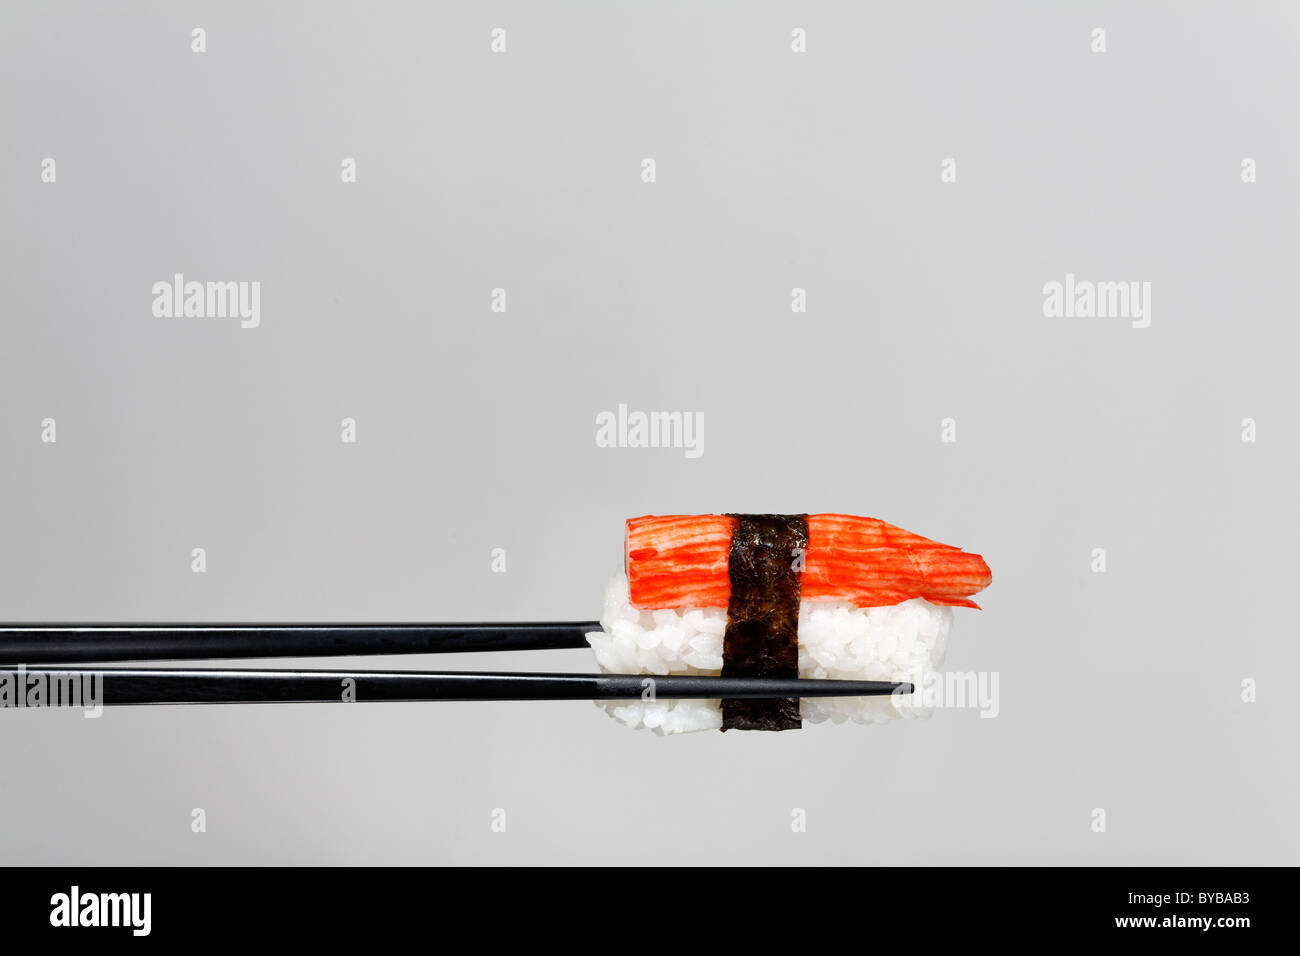 Schwarzen Stäbchen halten Nigiri Sushi mit Hummerfleisch, umhüllt mit nori  Stockfotografie - Alamy